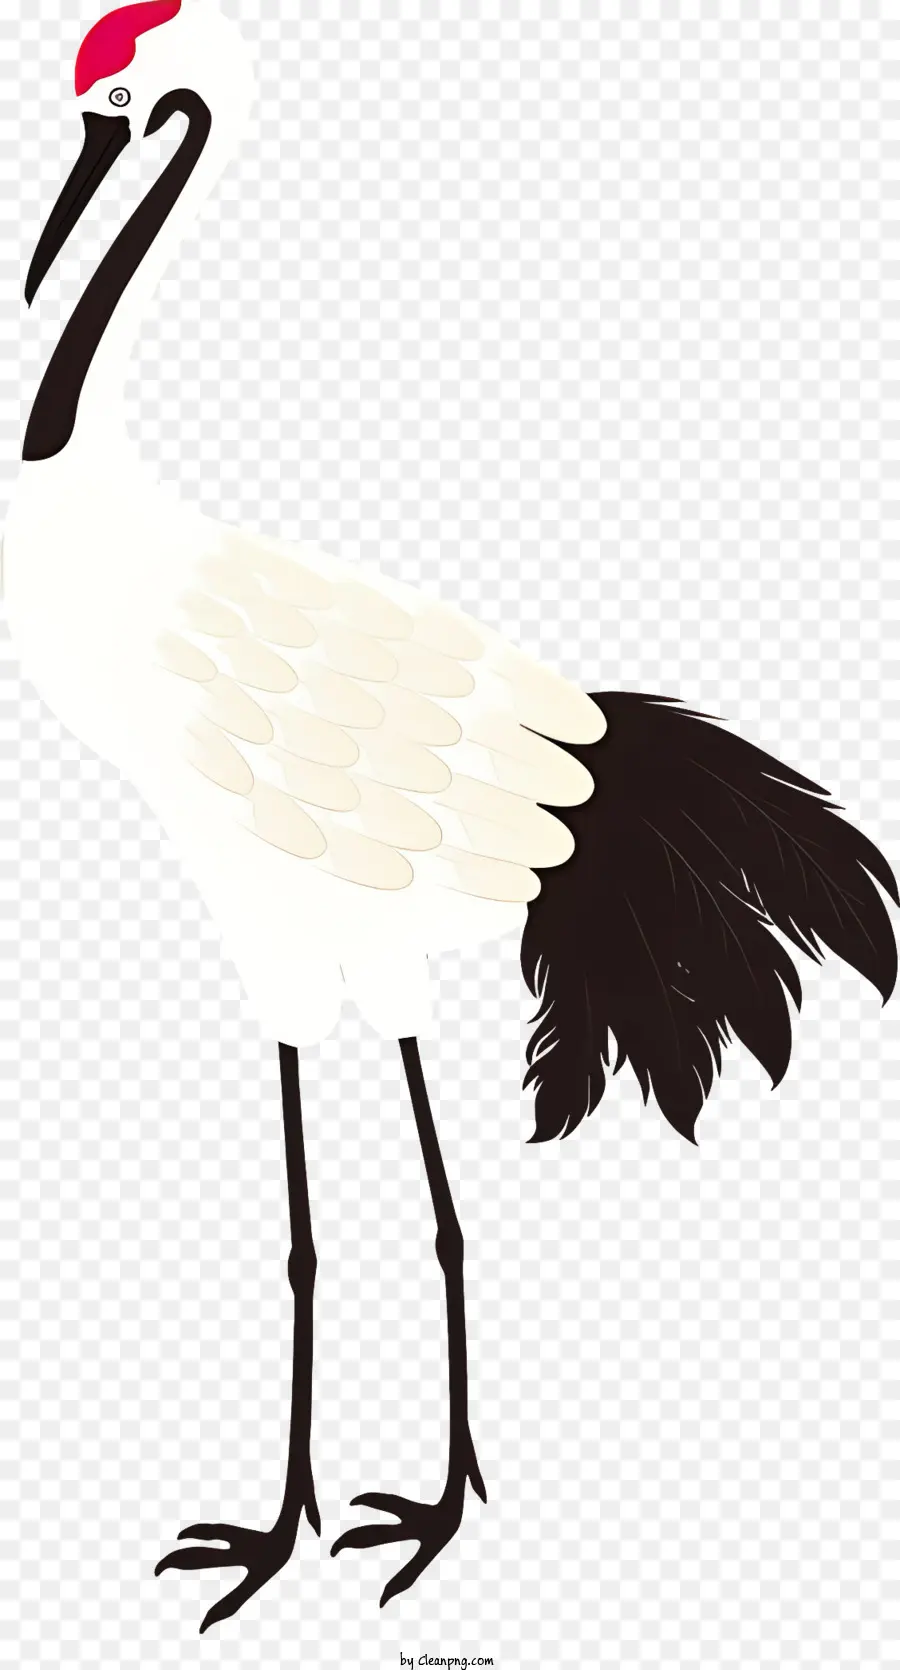 Vogel langer Schnabel schwarze Federn dünner Körper auf den Beinen stehen - Schwarz -Weiß -Vogel mit offenem Schnabel